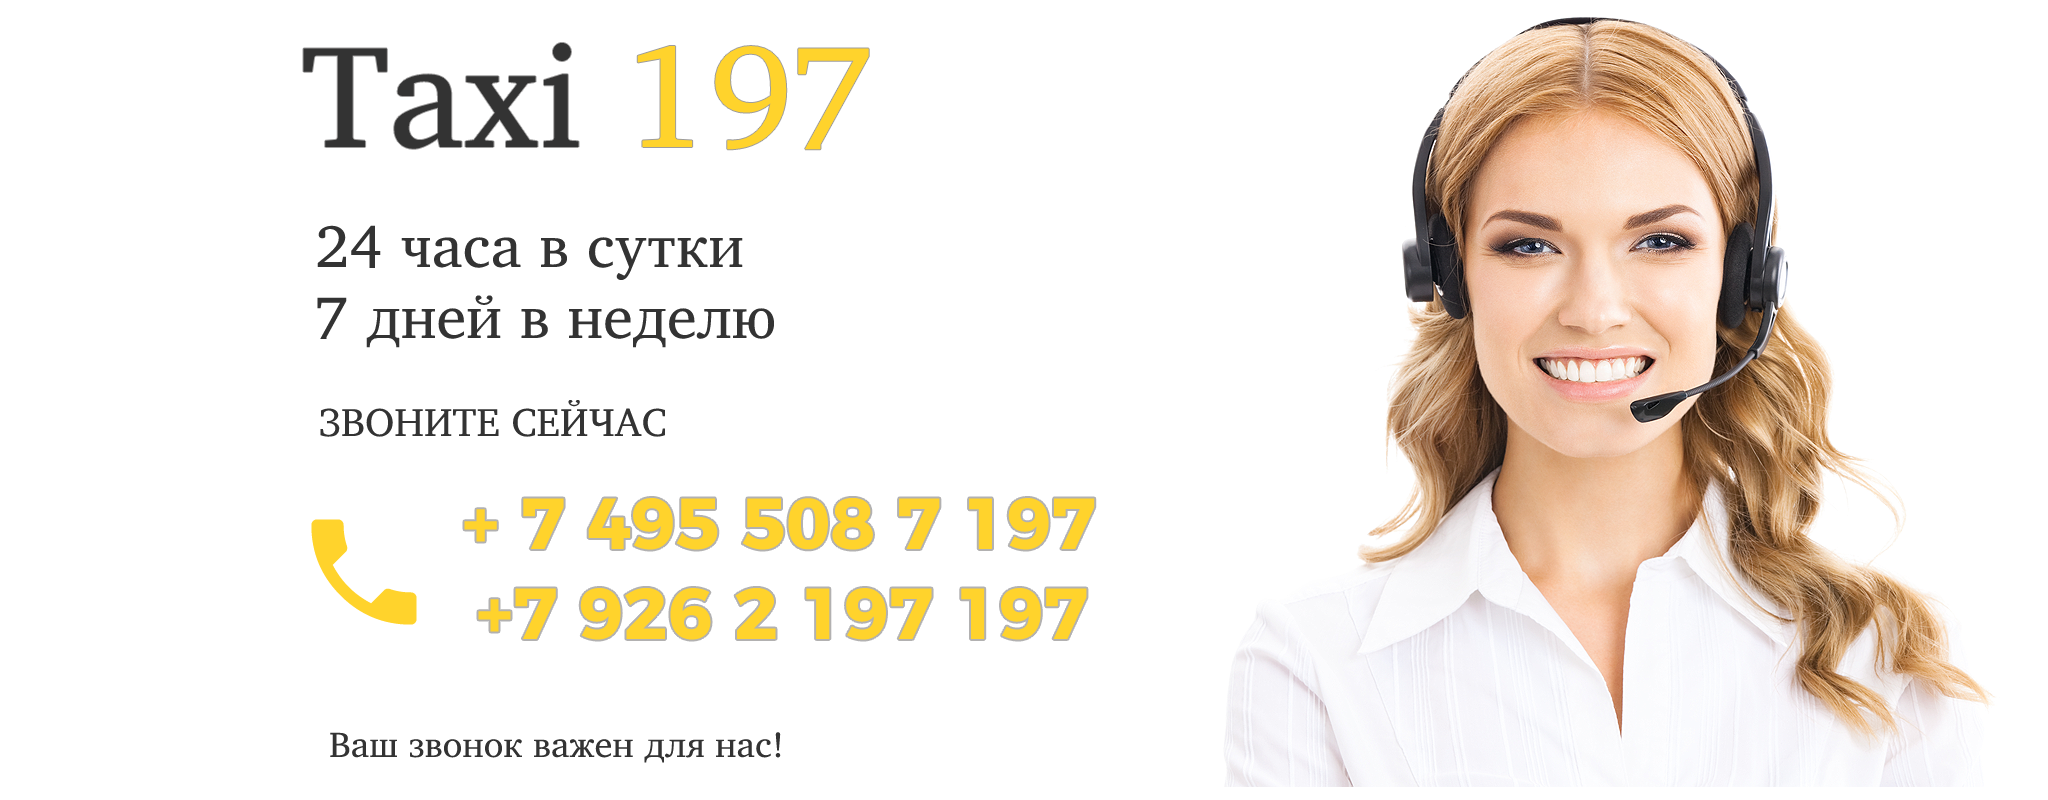 Такси 197 - Москва